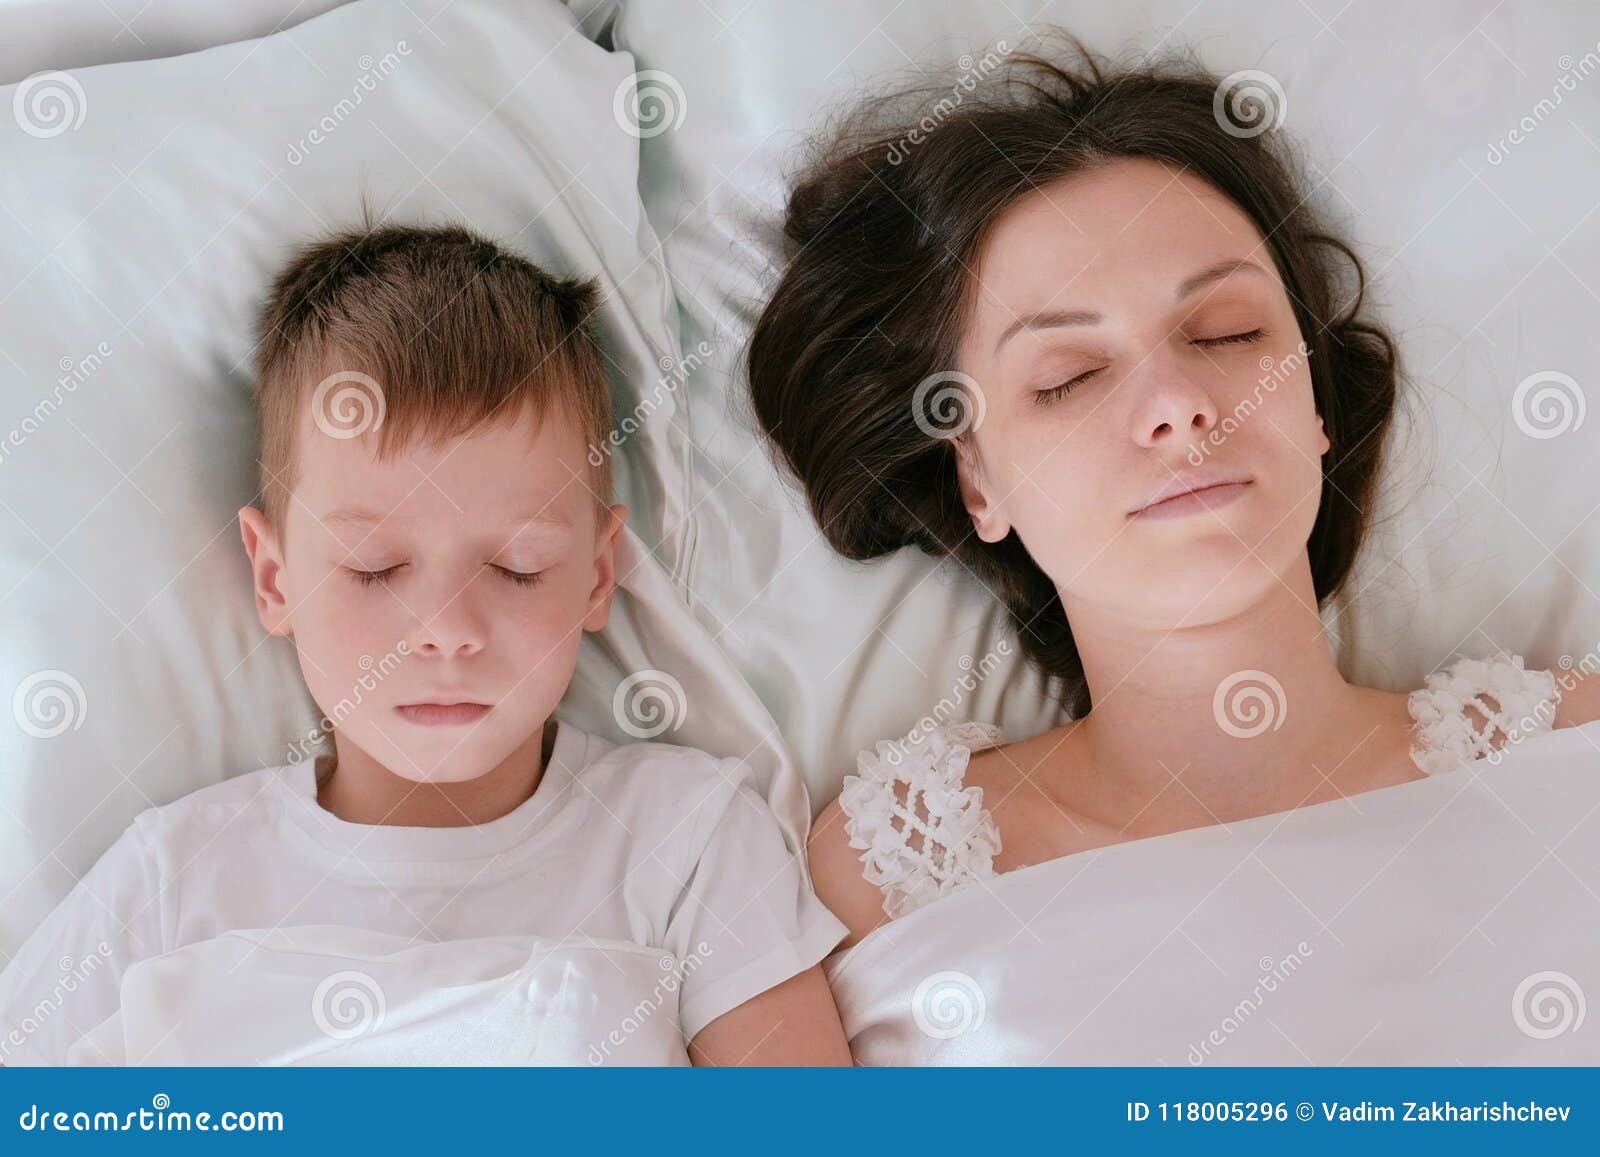 美丽的一起睡觉在a的妇女和婴孩 库存照片. 图片 包括有 家庭, 母亲, 人们, 婴孩, 安静, 位于, 母性 - 62681366